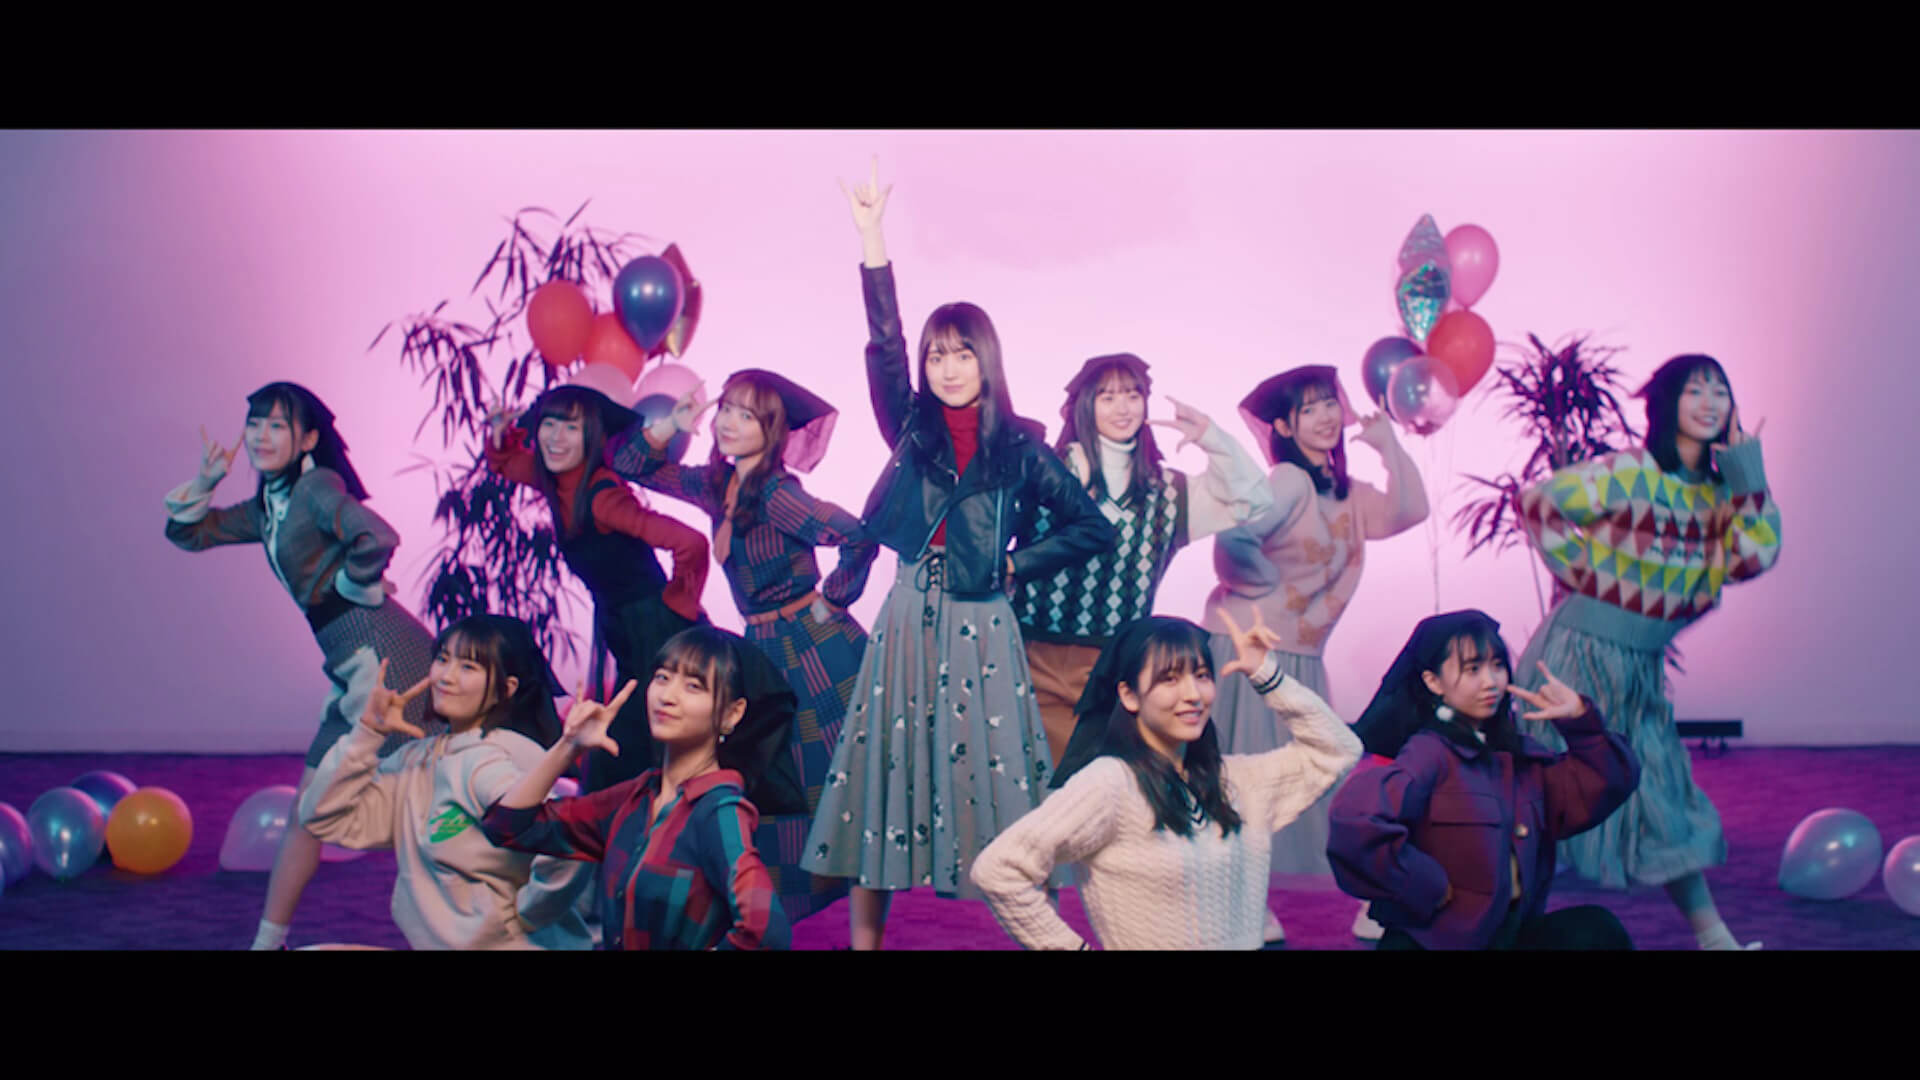 乃木坂46の新曲 I See のミュージックビデオがついに解禁 初のセンターに賀喜遥香 Qetic